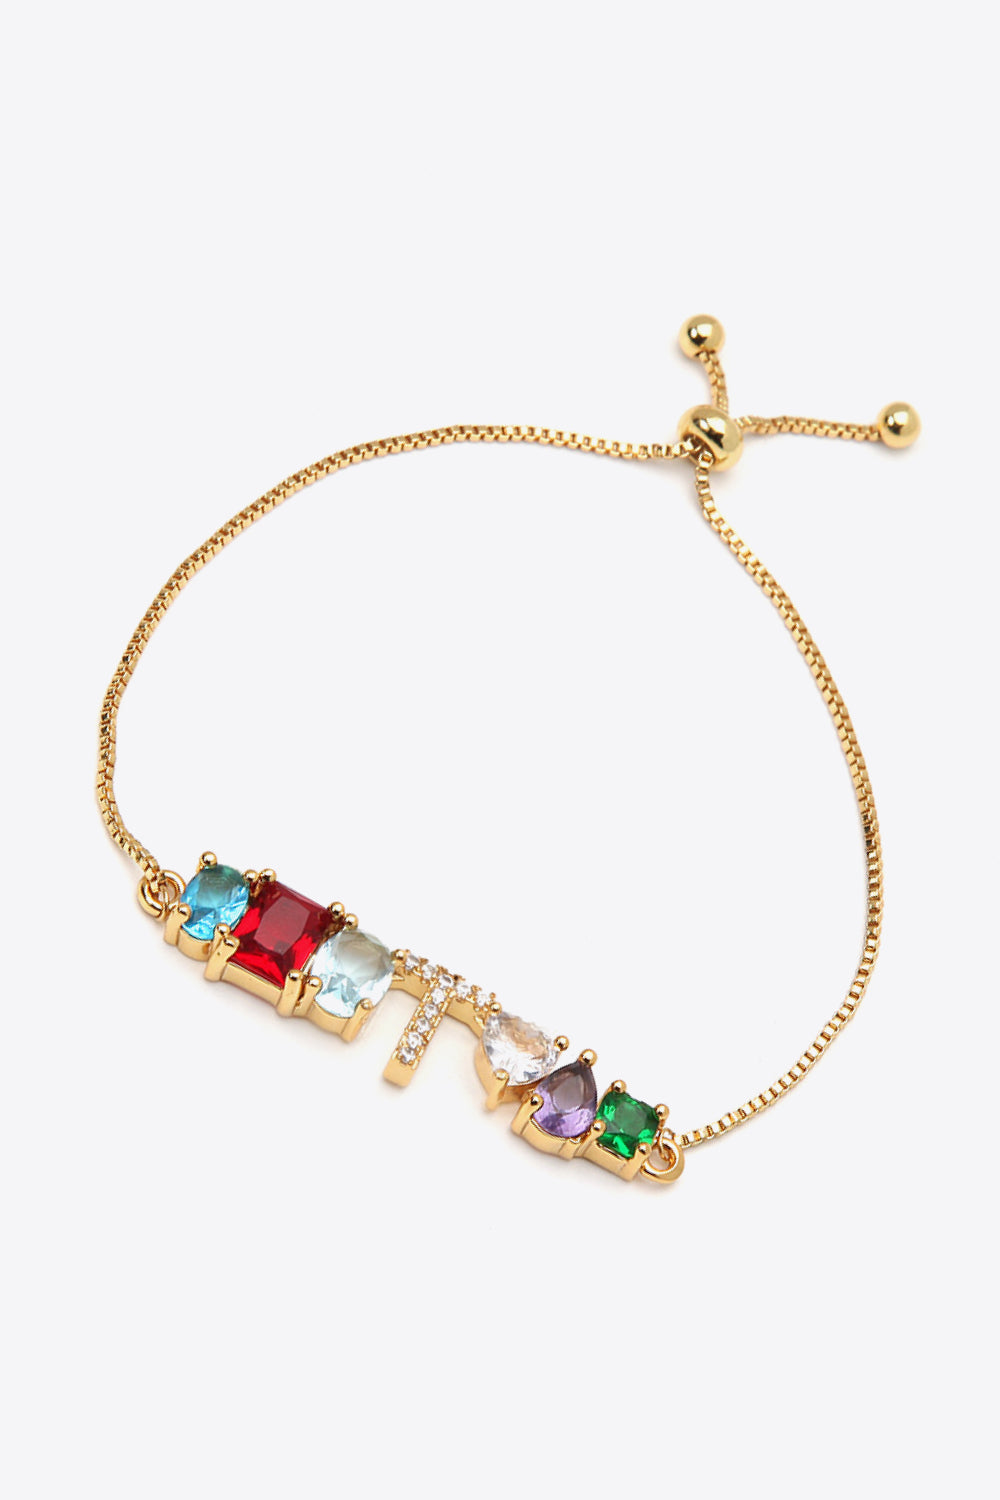 K to T Zircon Bracelet - Women’s Jewelry - Bracelets - 29 - 2024